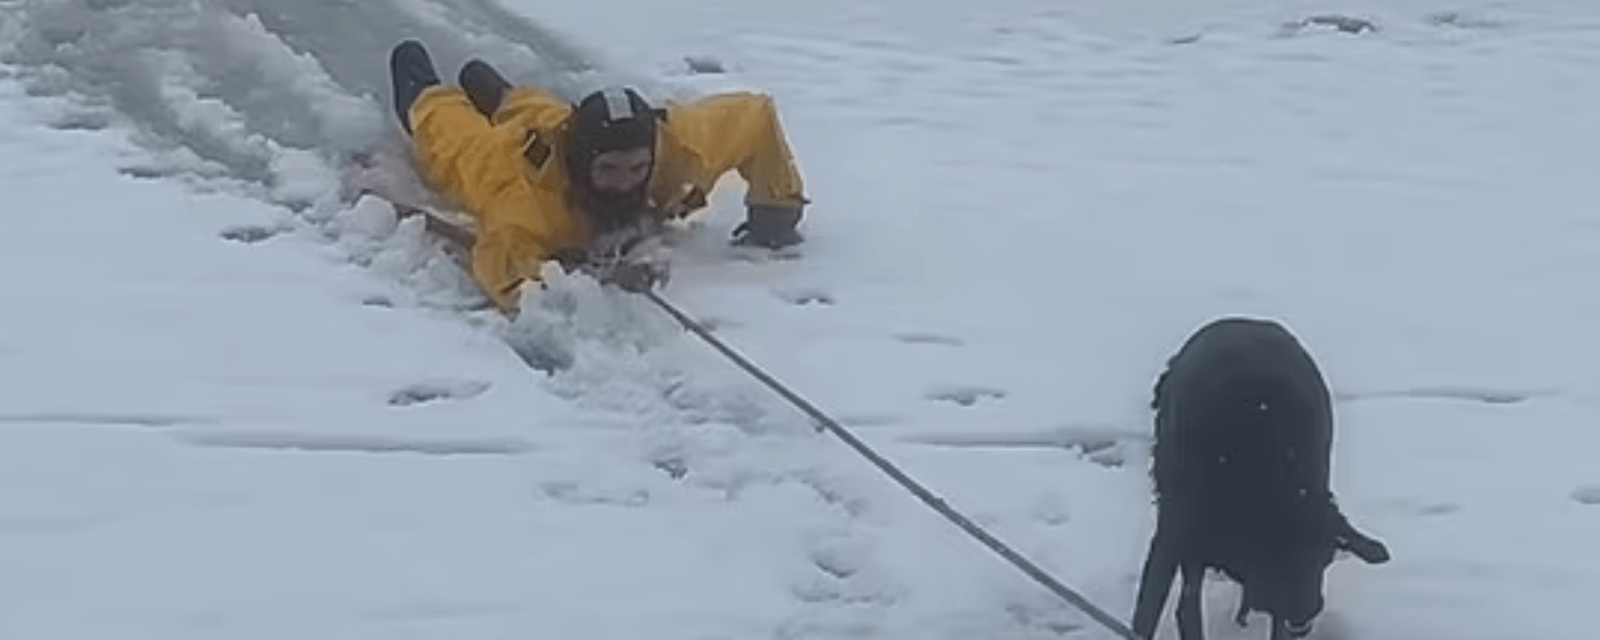 Des pompiers sauvent un chien des eaux glaciales.